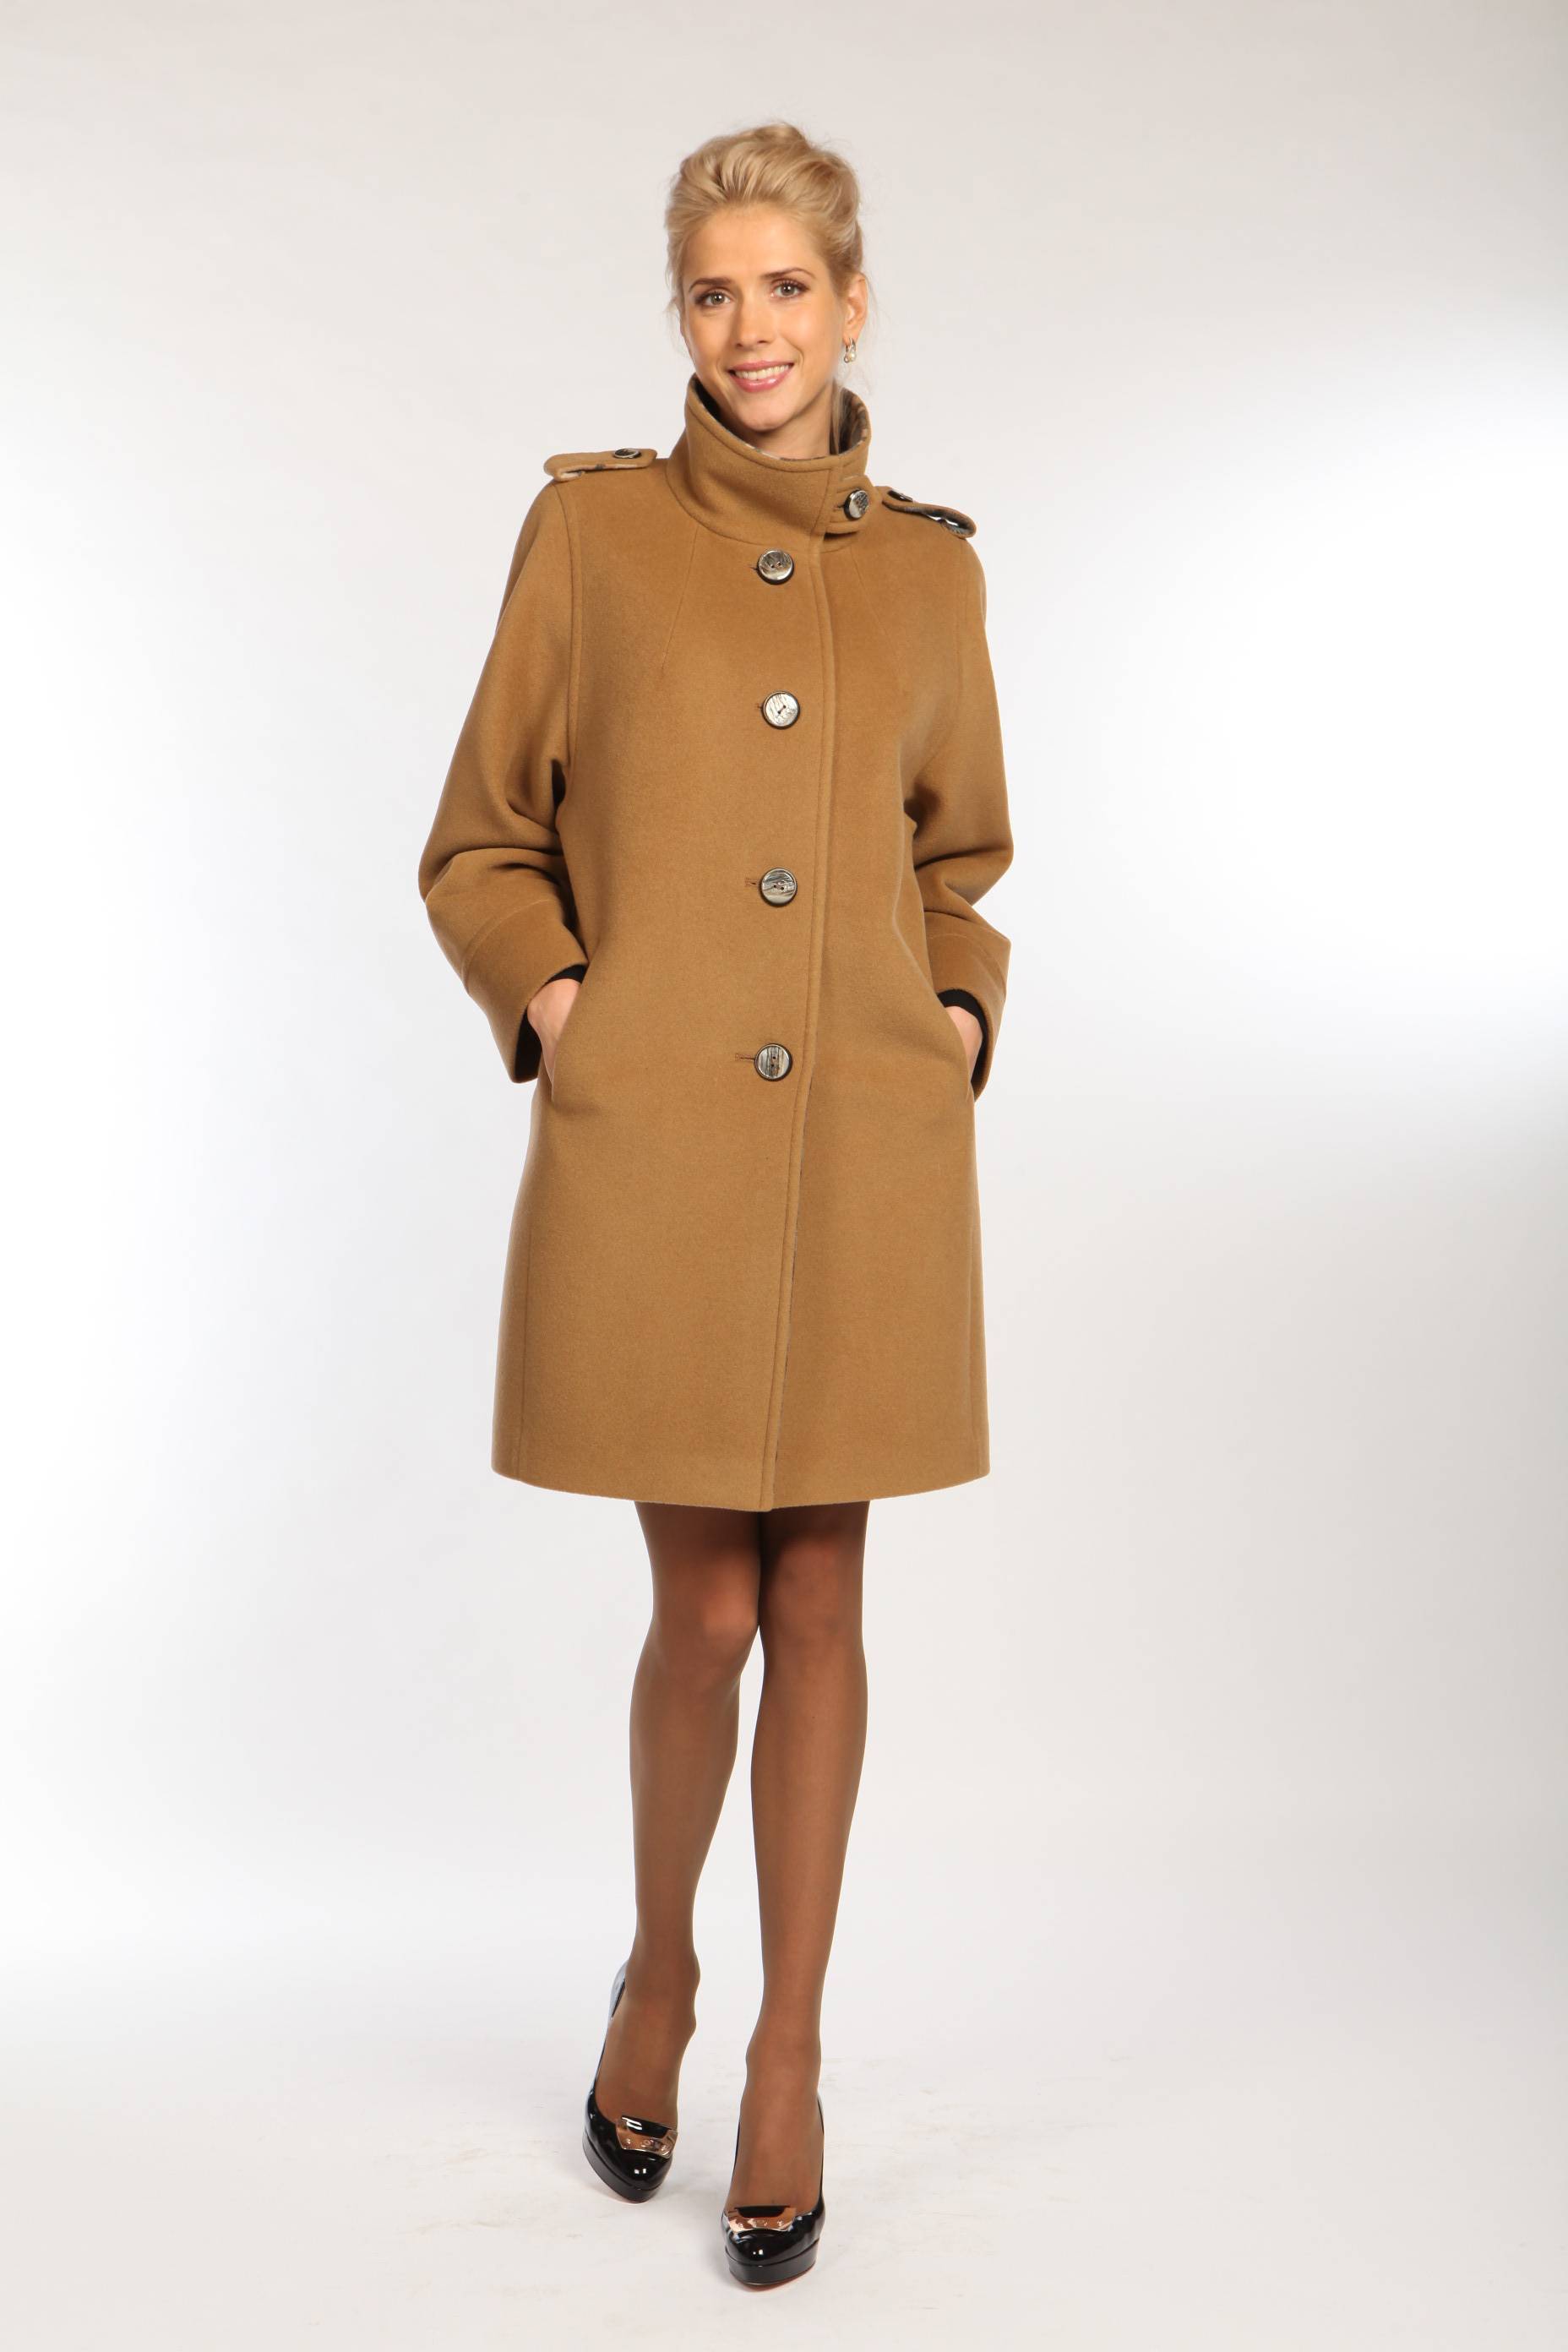 Фабрика демисезонного пальто. Женское пальто фабрики Рене модель 21988. Осеннее пальто. Демисезонное пальто. Пальто женское осень.